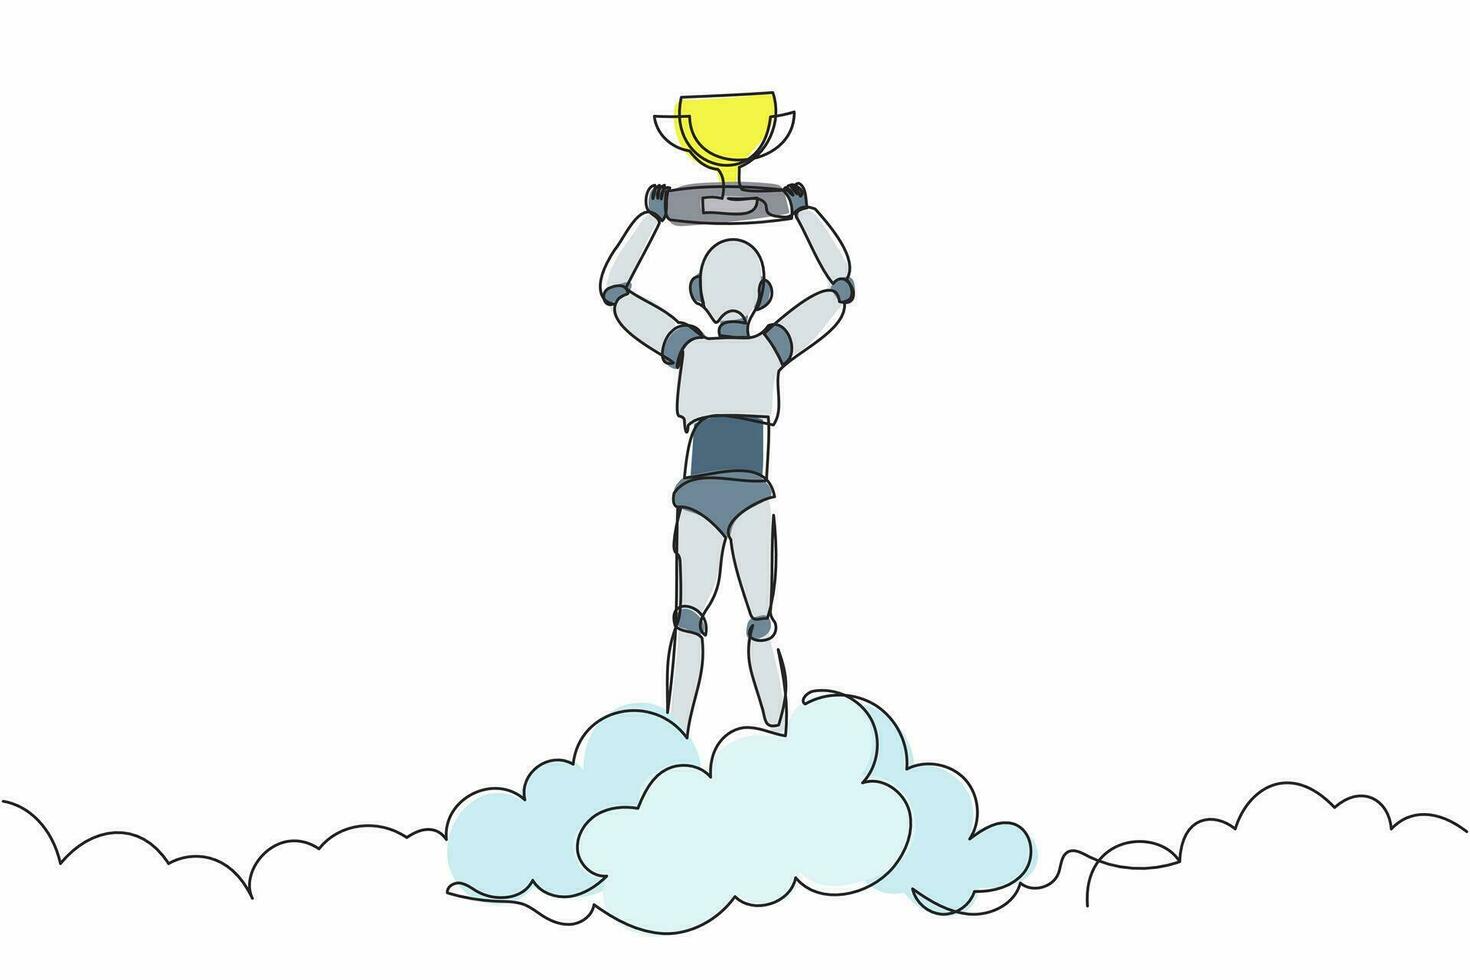 singolo robot di disegno a tratteggio che tiene il trofeo nel cloud. celebra la vittoria in cielo. sviluppo tecnologico futuro. apprendimento automatico dell'intelligenza artificiale. illustrazione vettoriale di disegno a linea continua